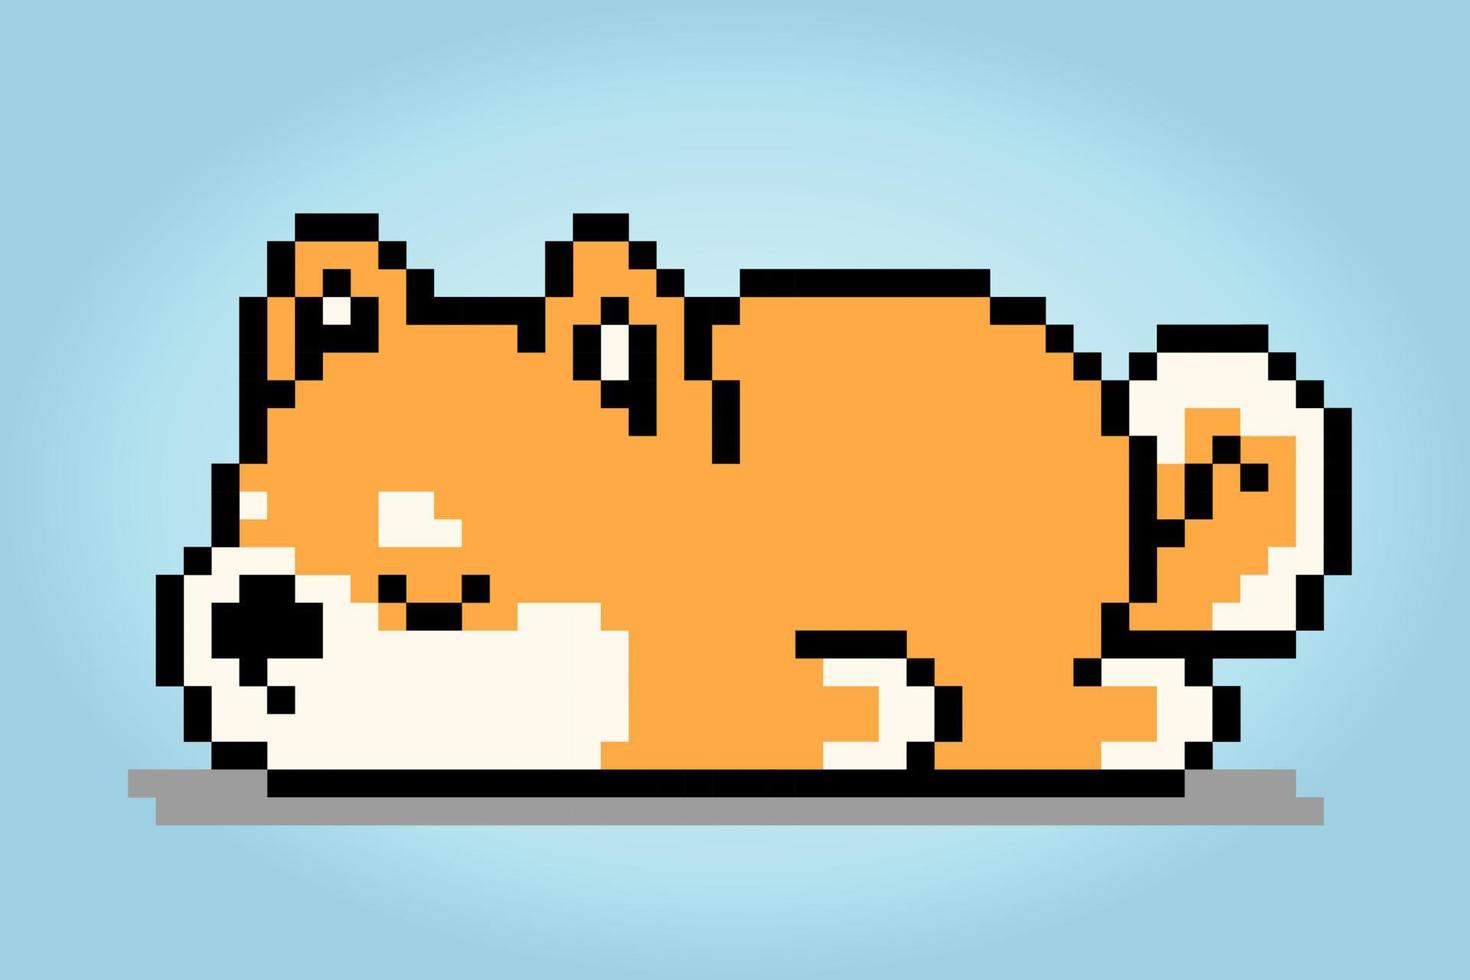 8 bit pixlar shiba inu hund är sovande. djur- pixlar för tillgång spel eller korsa sy mönster i vektor illustrationer.